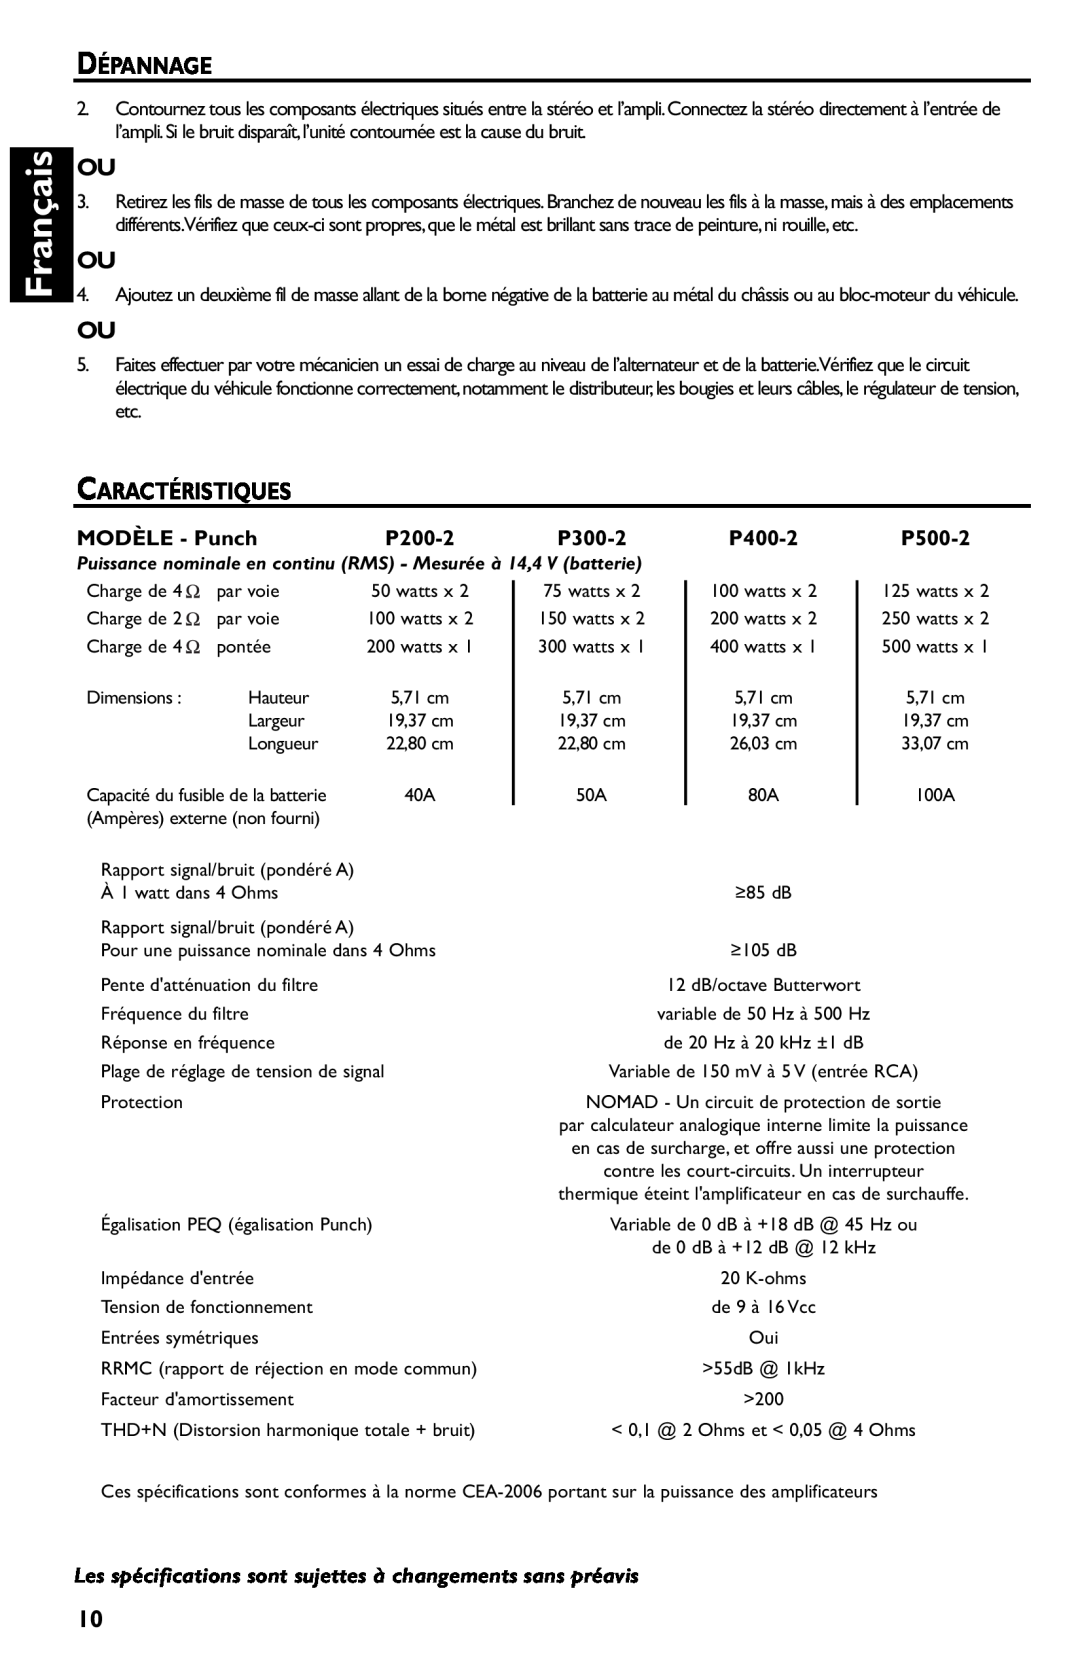 Rockford Fosgate p3002 manual Français, Dépannage, Caractéristiques, MODÈLE - Punch, P200-2, P300-2, P400-2, P500-2 